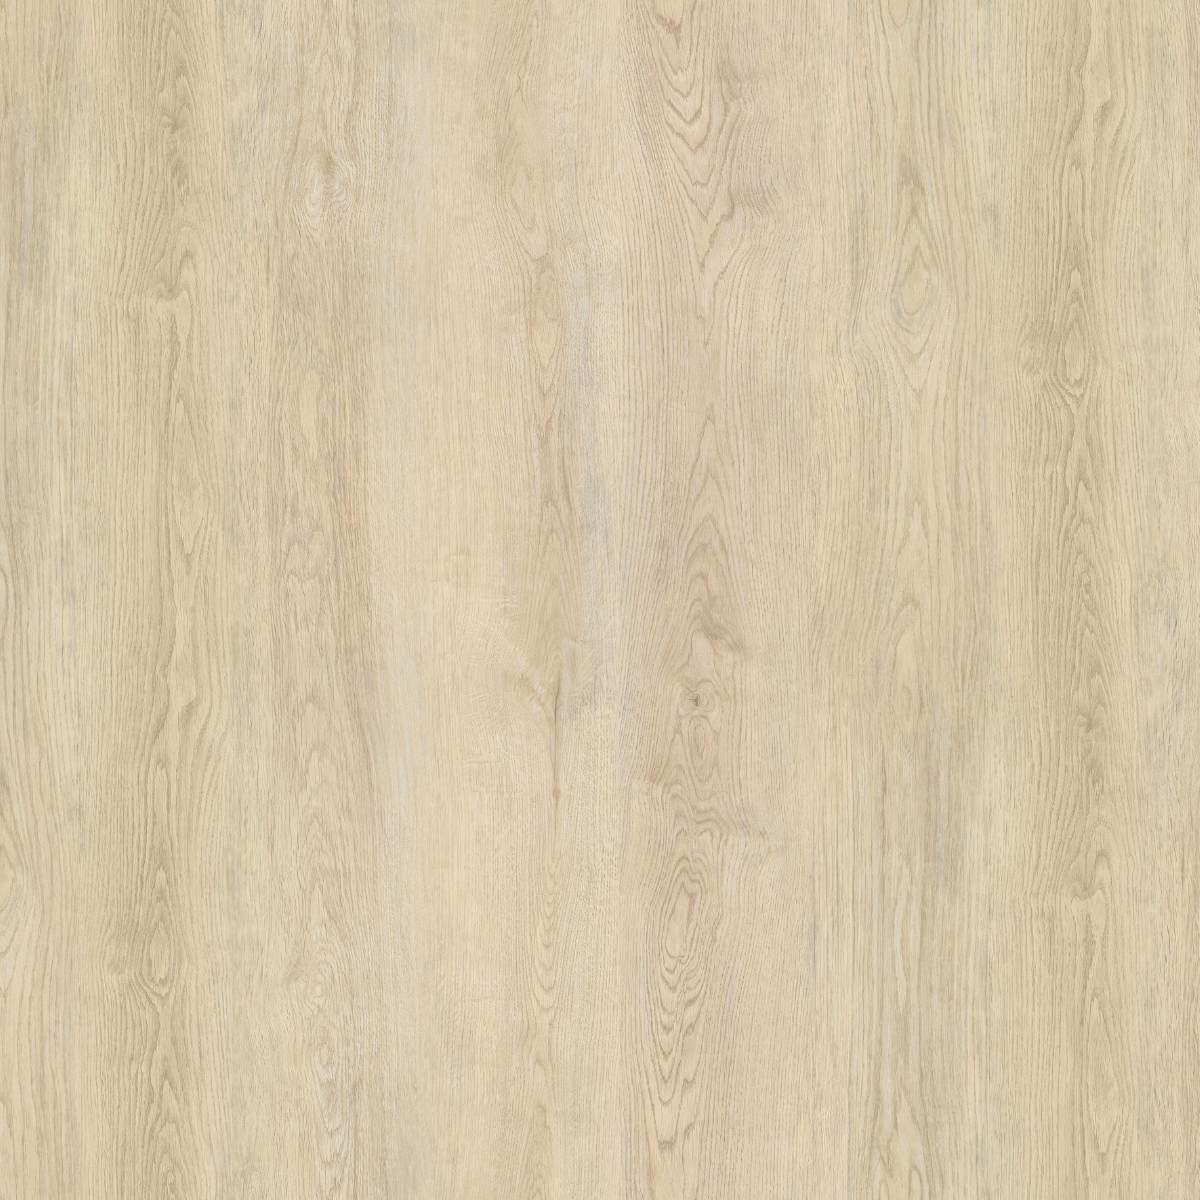 Vinylová podlaha plovoucí SPC Comfort Blond Rustic Oak